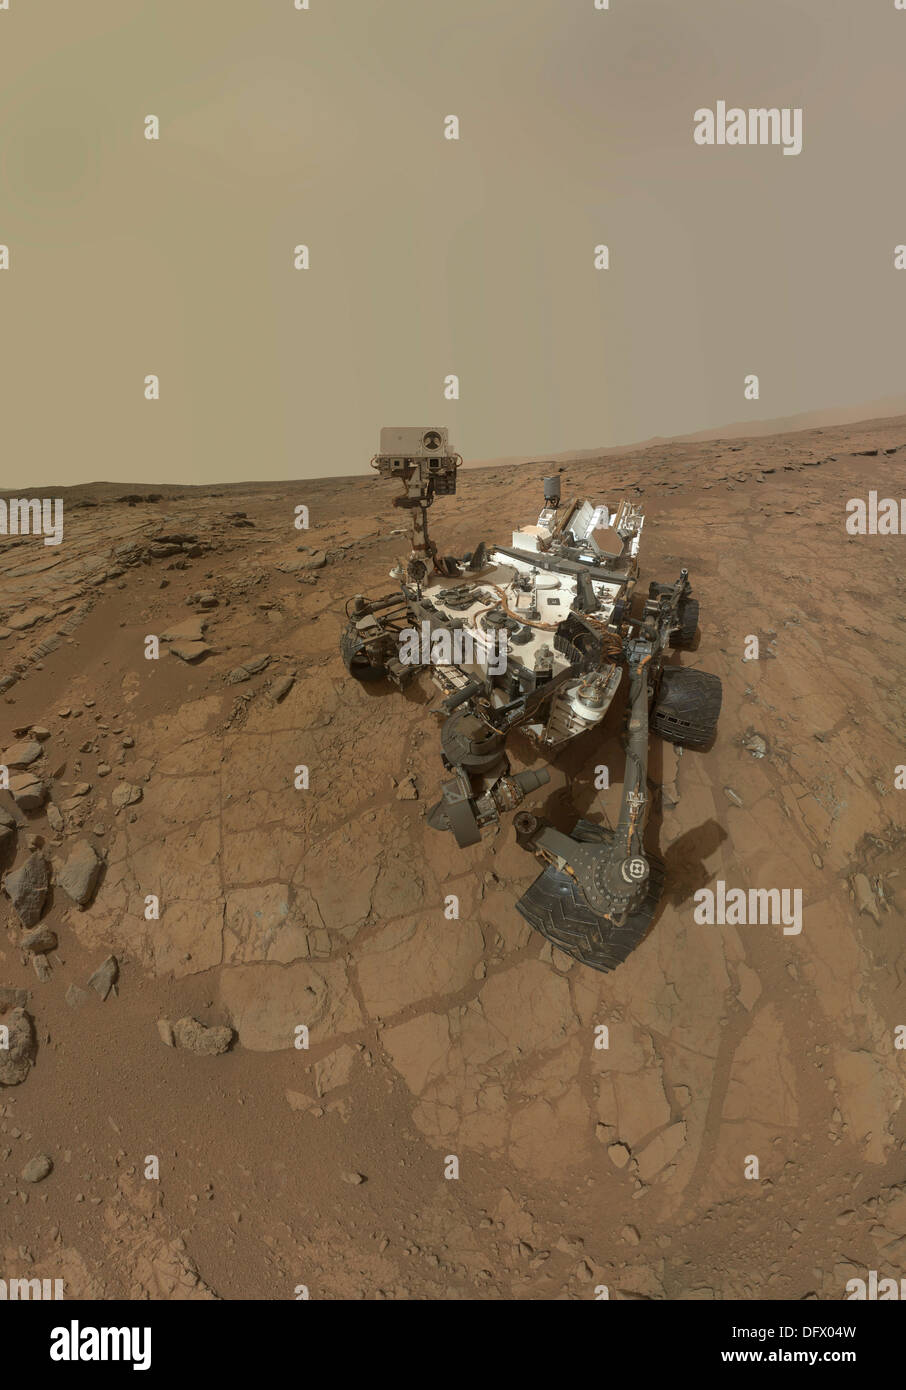 Autoritratto di curiosità rover sulla superficie di Marte. Foto Stock